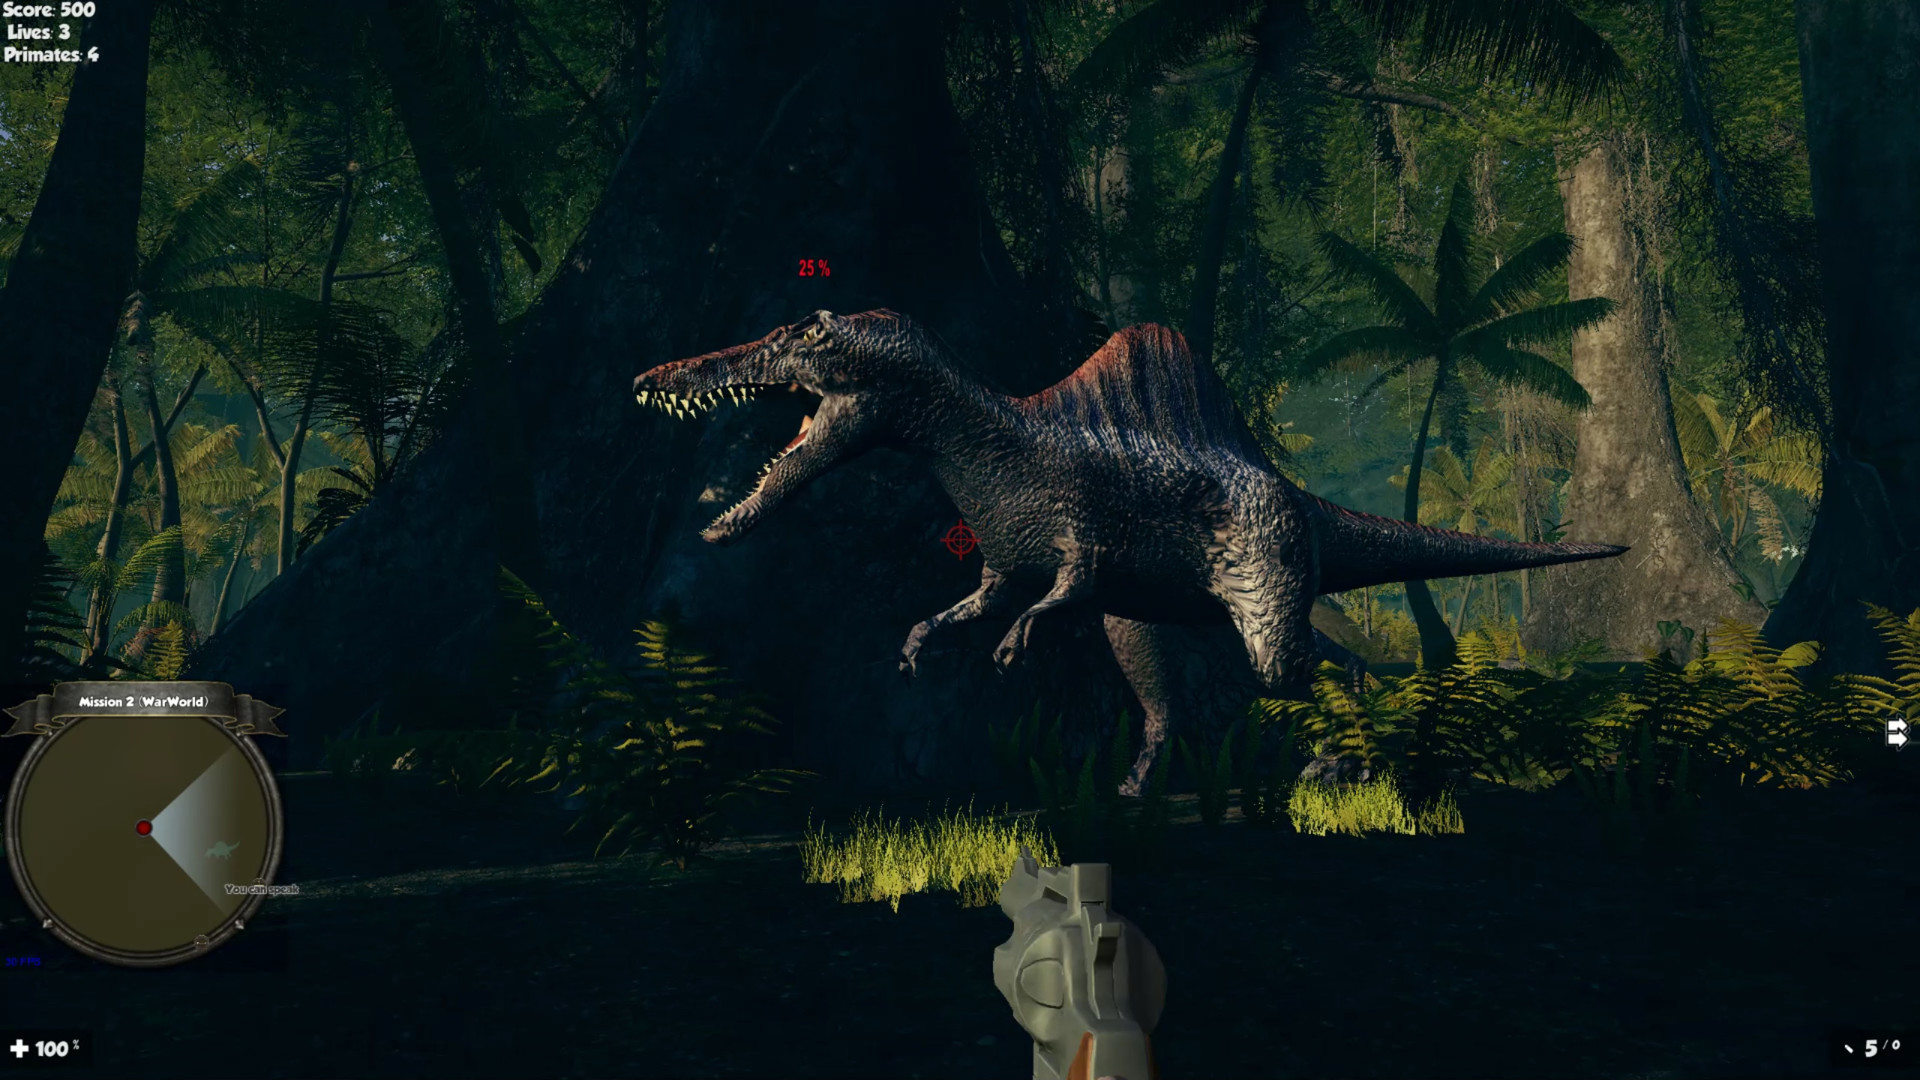 Play Midnight multiplayer dinosaur hunt